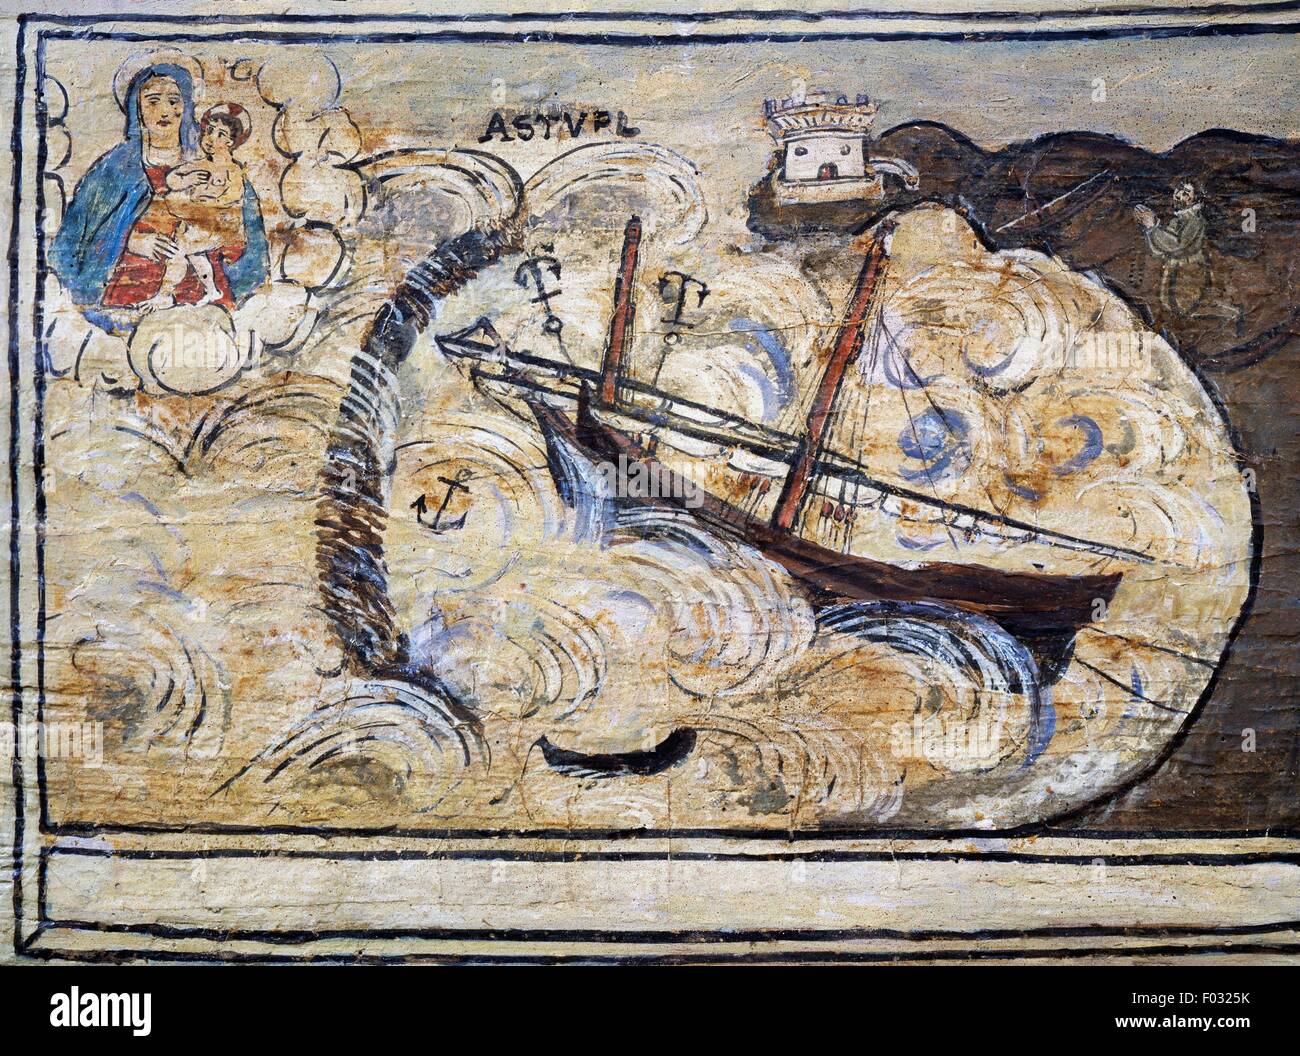 Bateau à voile sur la mer déchaînée, ex-voto marins, sanctuaire de Naples, Campanie, Italie, 18e siècle. Banque D'Images